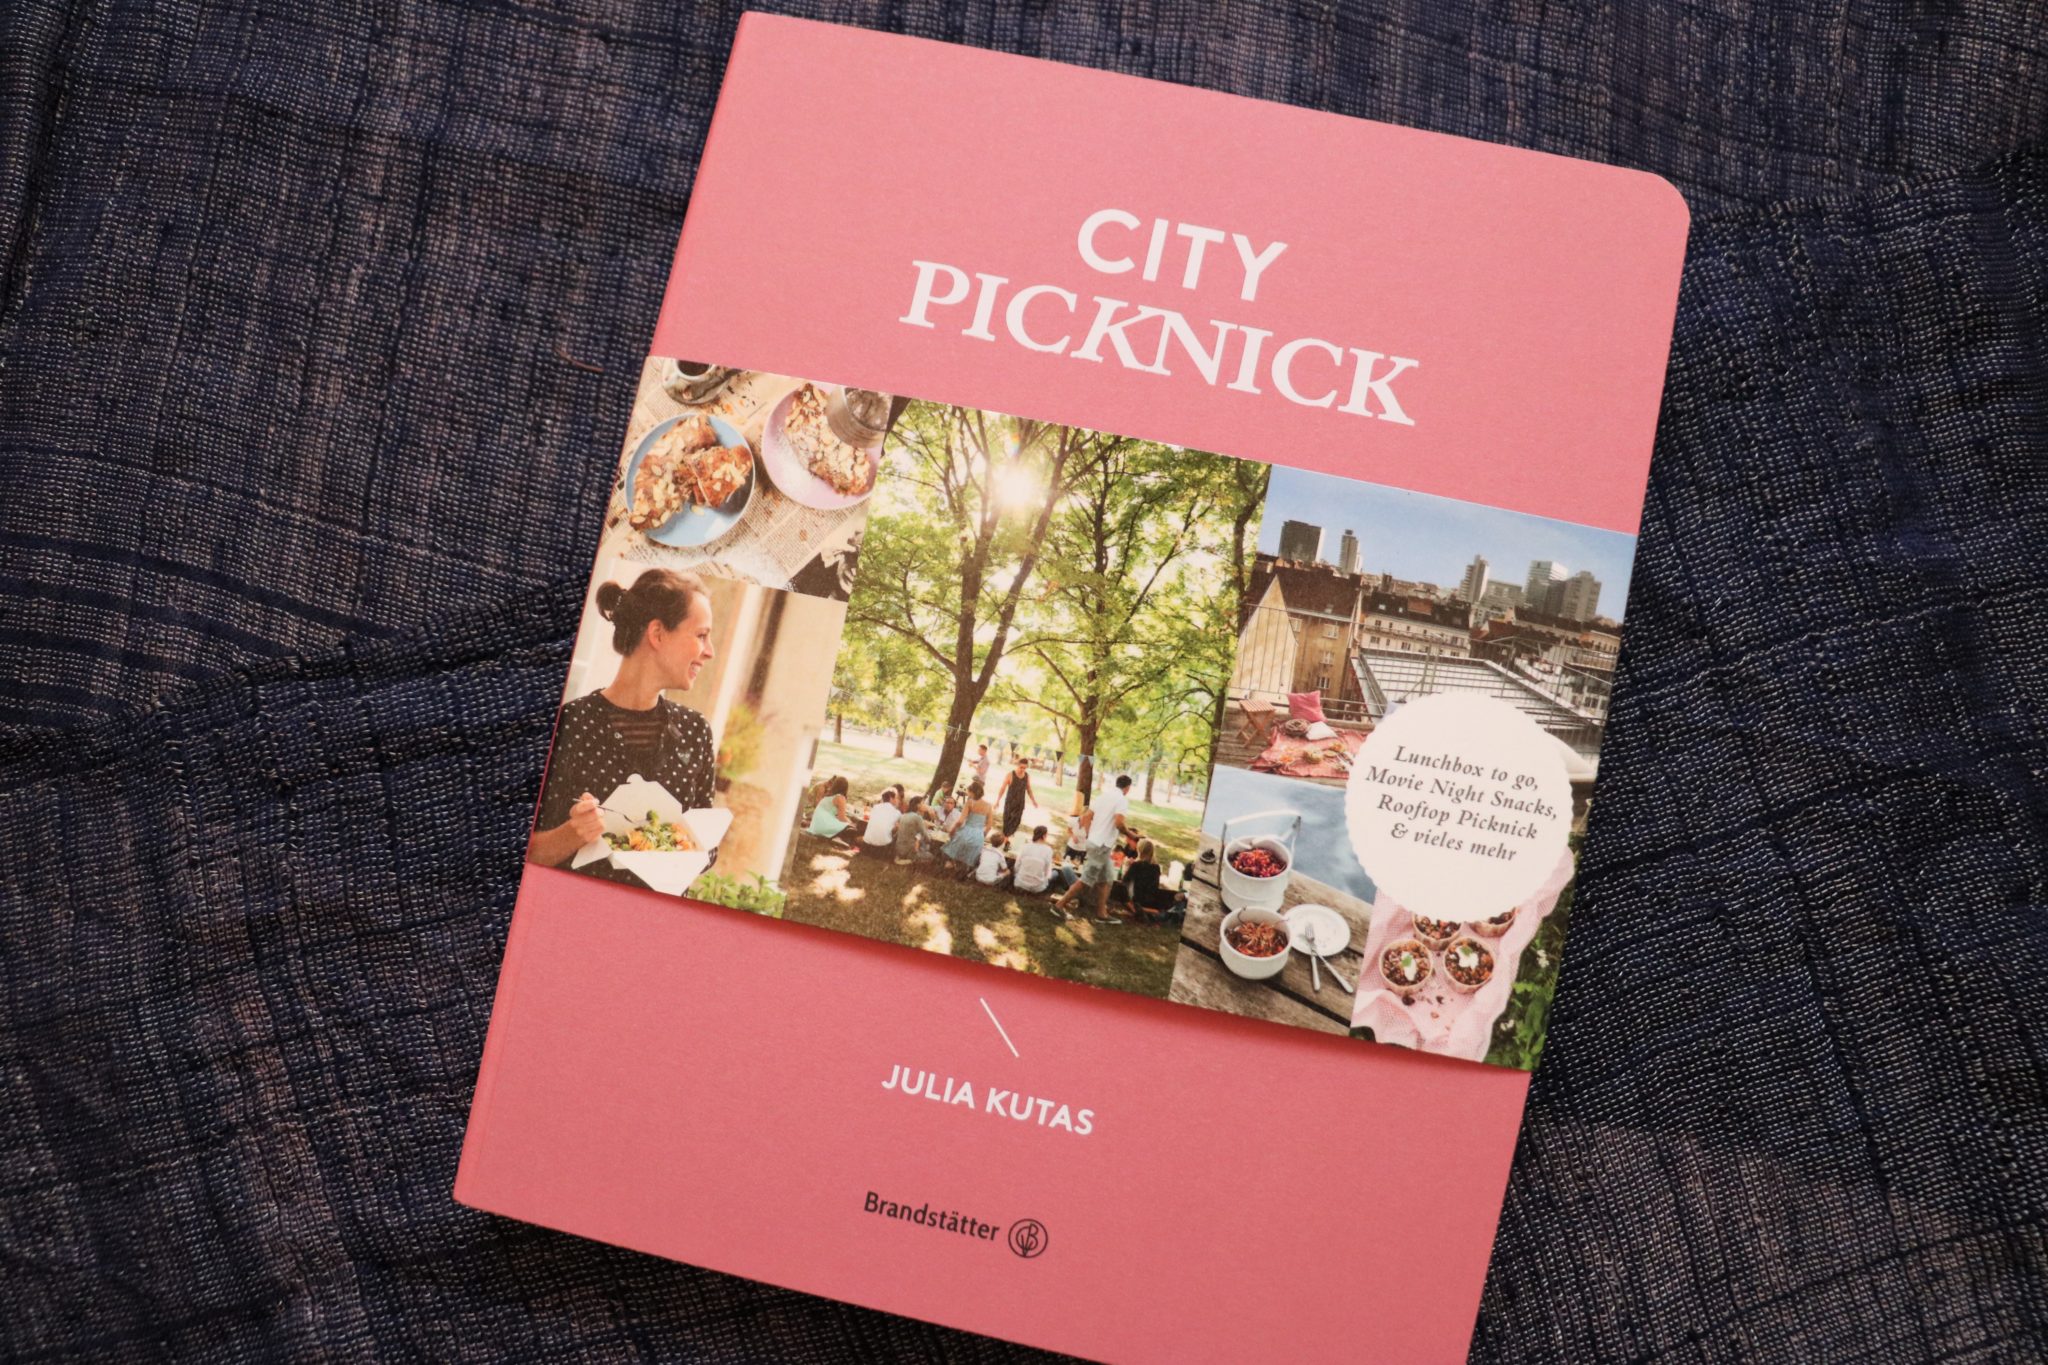 City Picknick_Julia Kutas